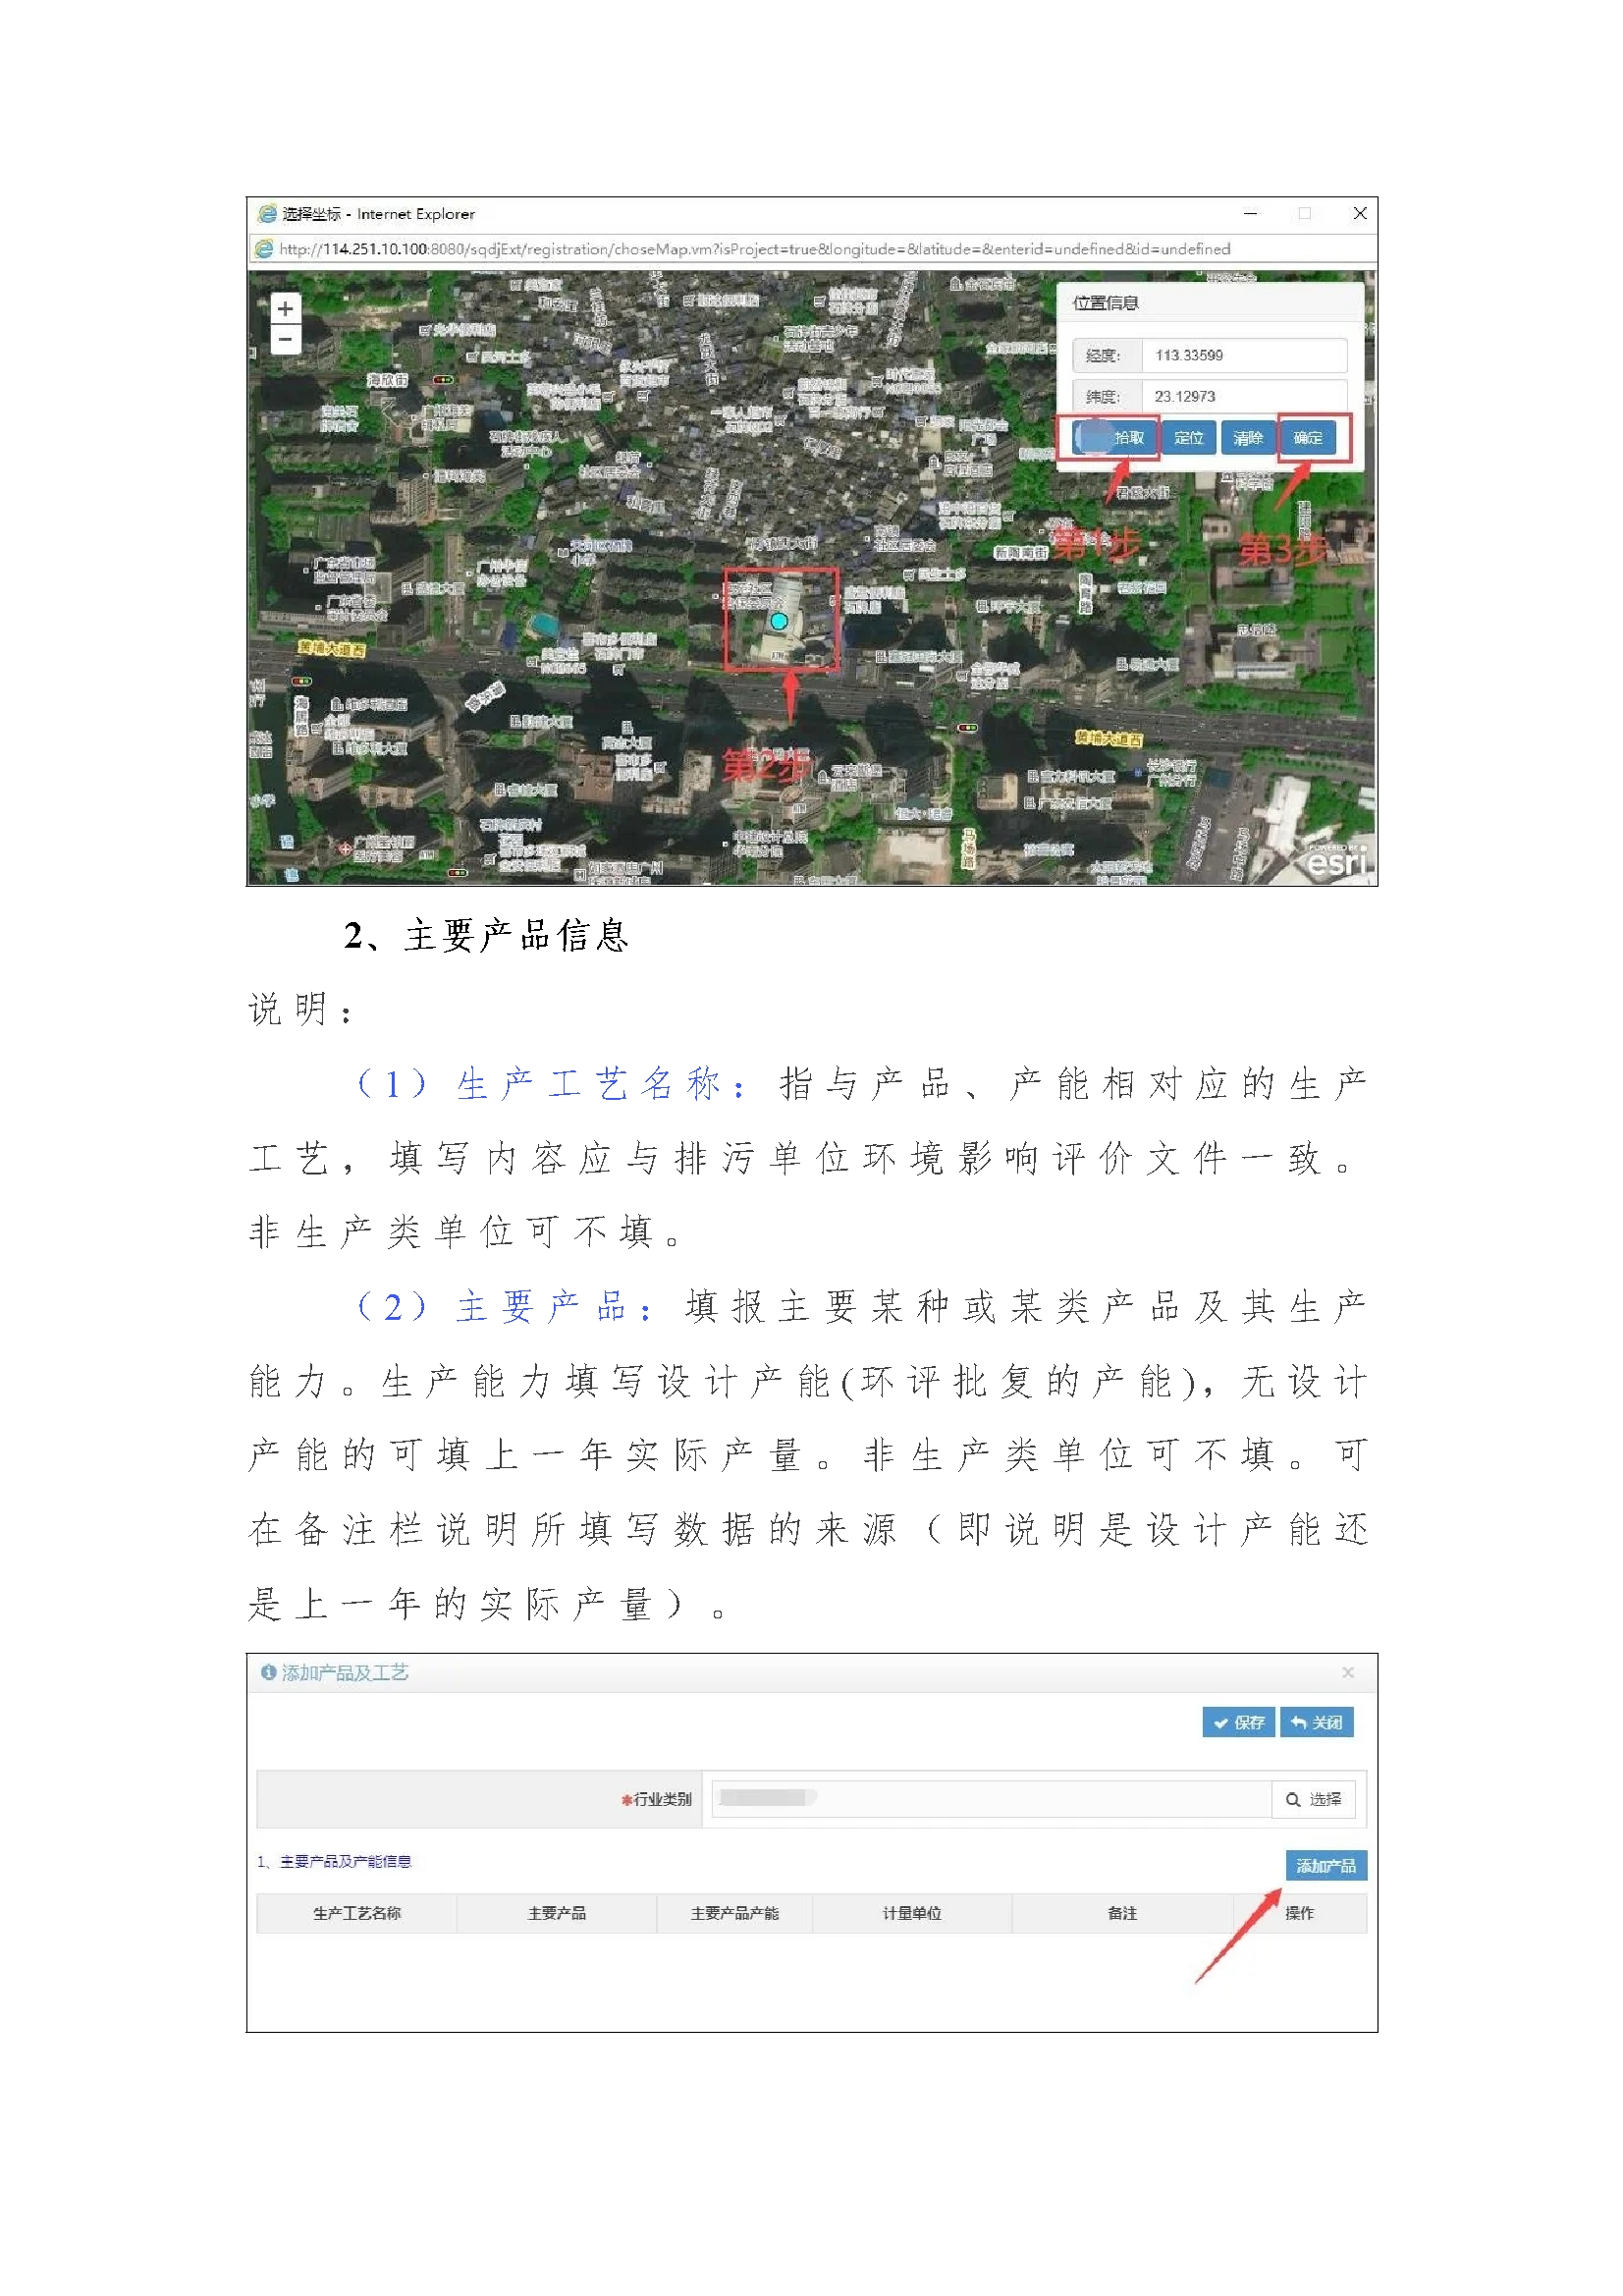 8梅县区固定污染源排污登记工作填报指南.jpg